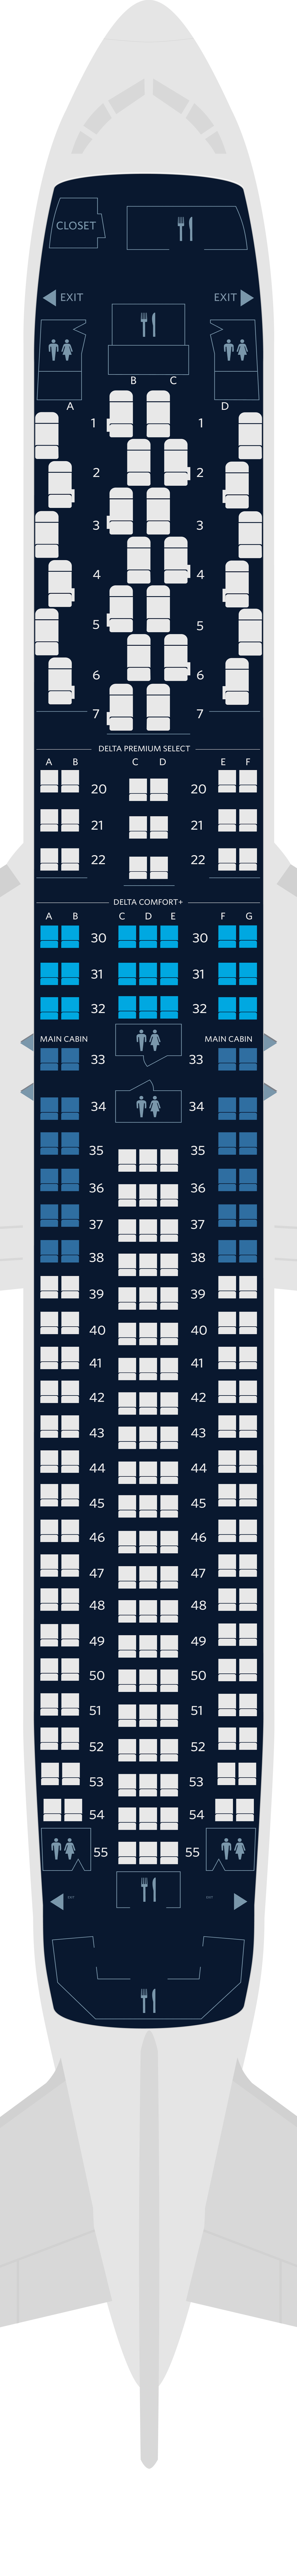 波音744飞机座位图图片